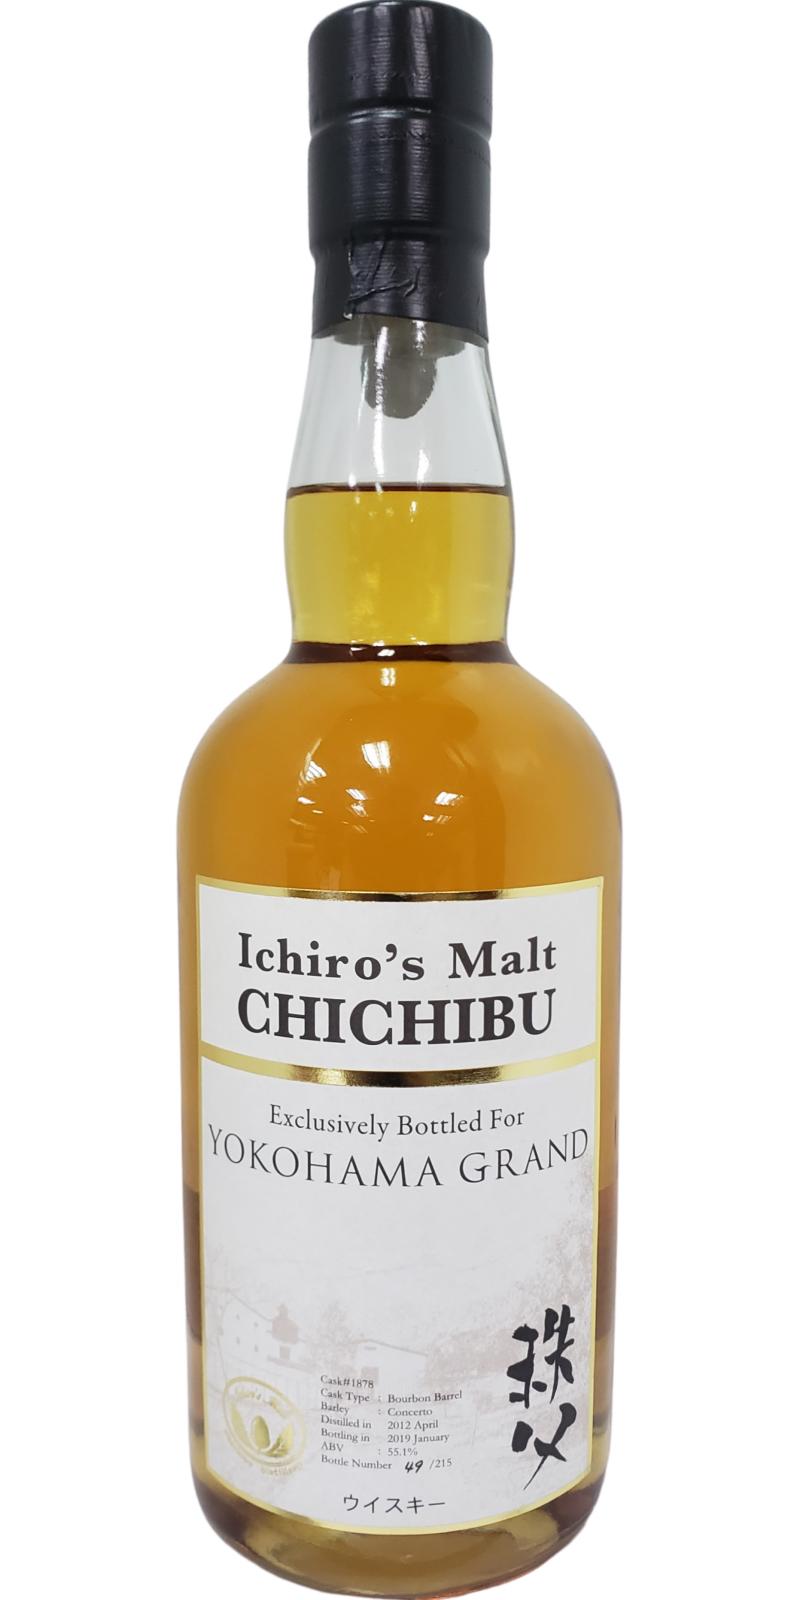 Chichibu 2012 Ichiro's Malt Bourbon Barrel #1878 Yokohama Grand 55.1% 700ml